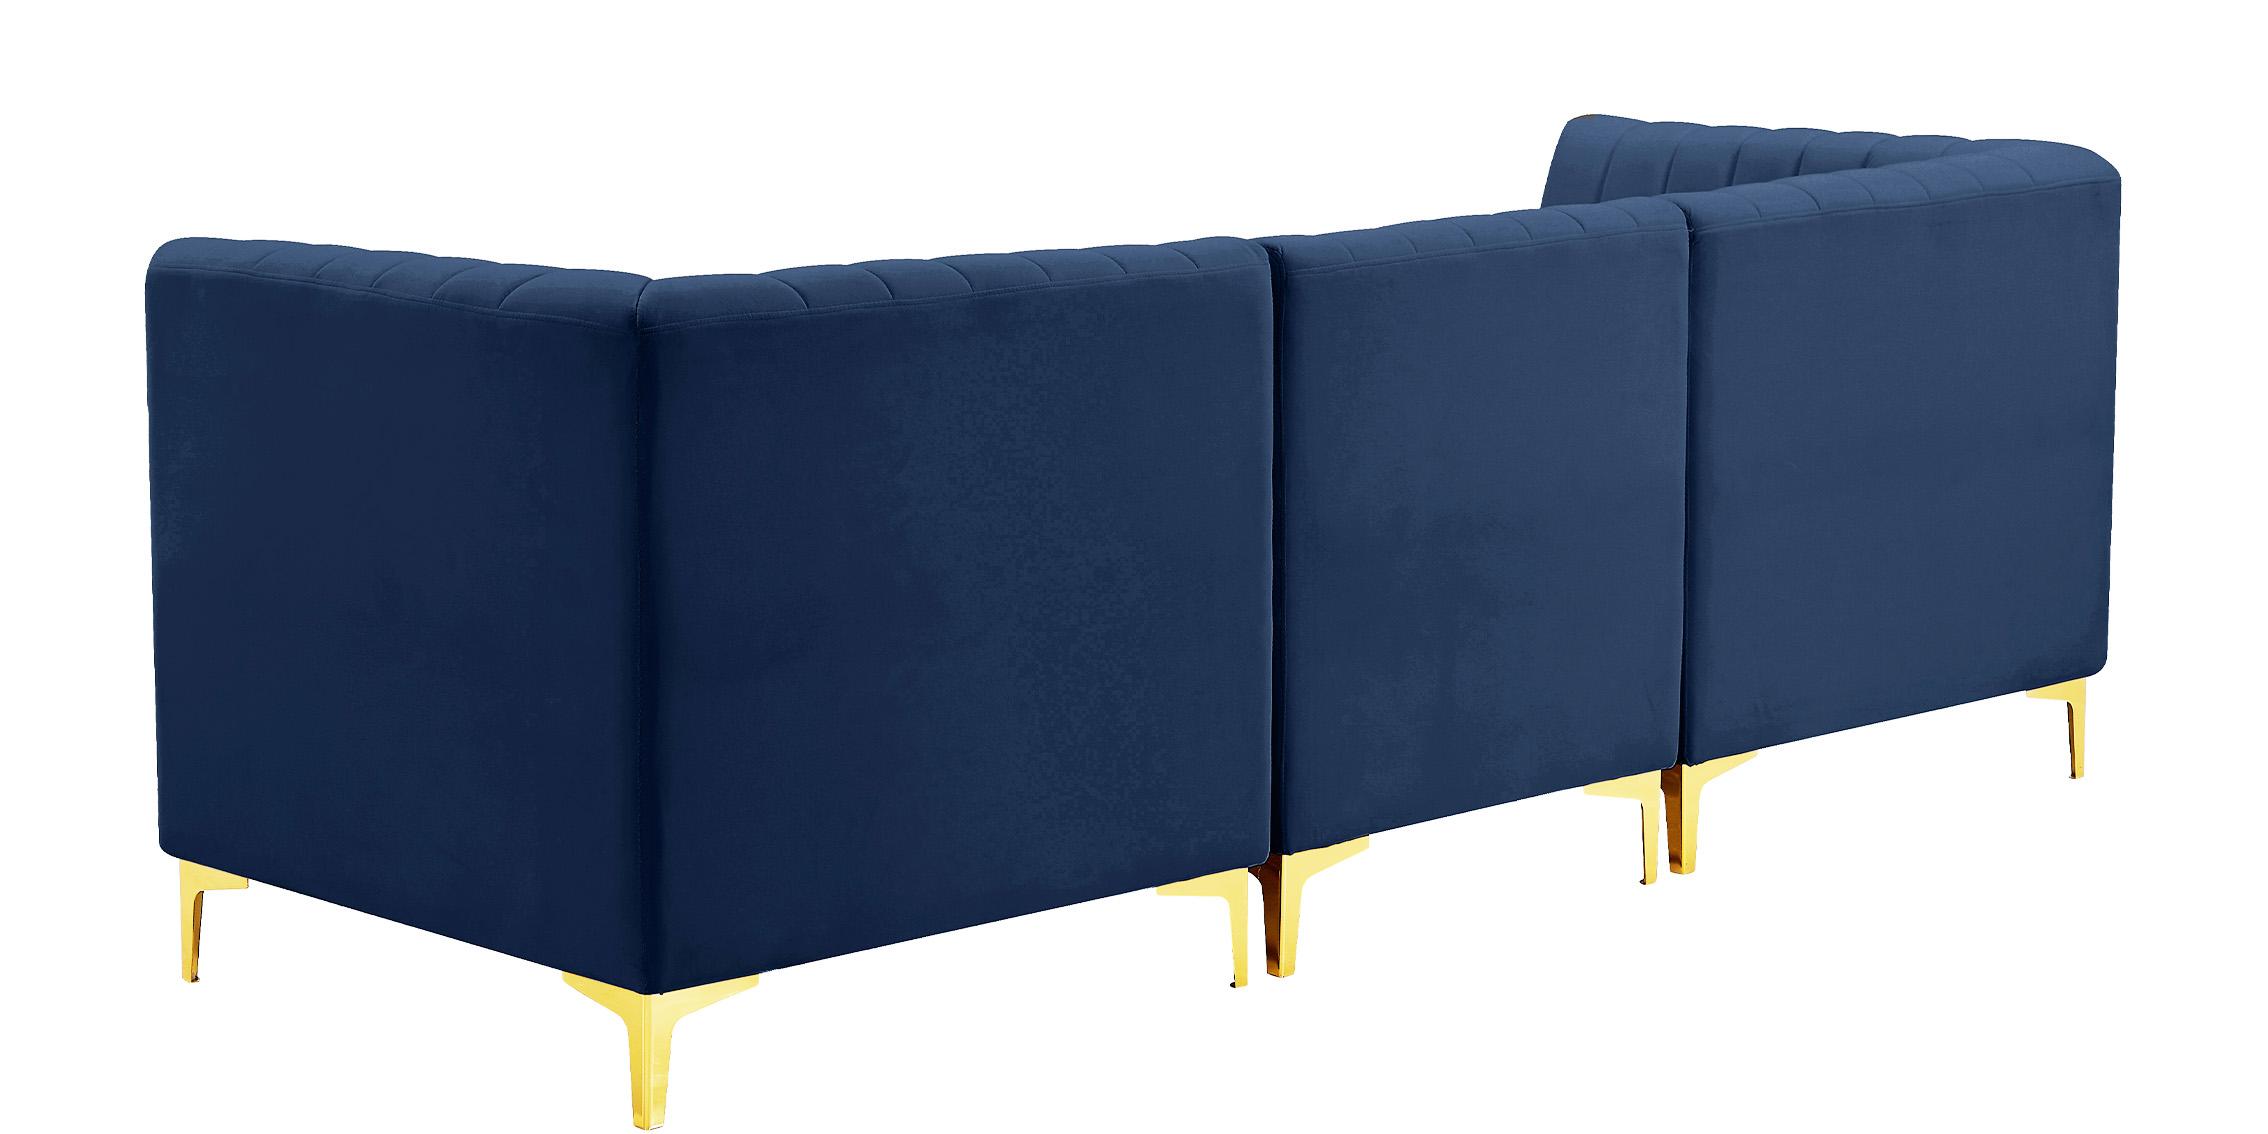 

    
604Navy-S93 Meridian Furniture Modular Sectional Sofa
